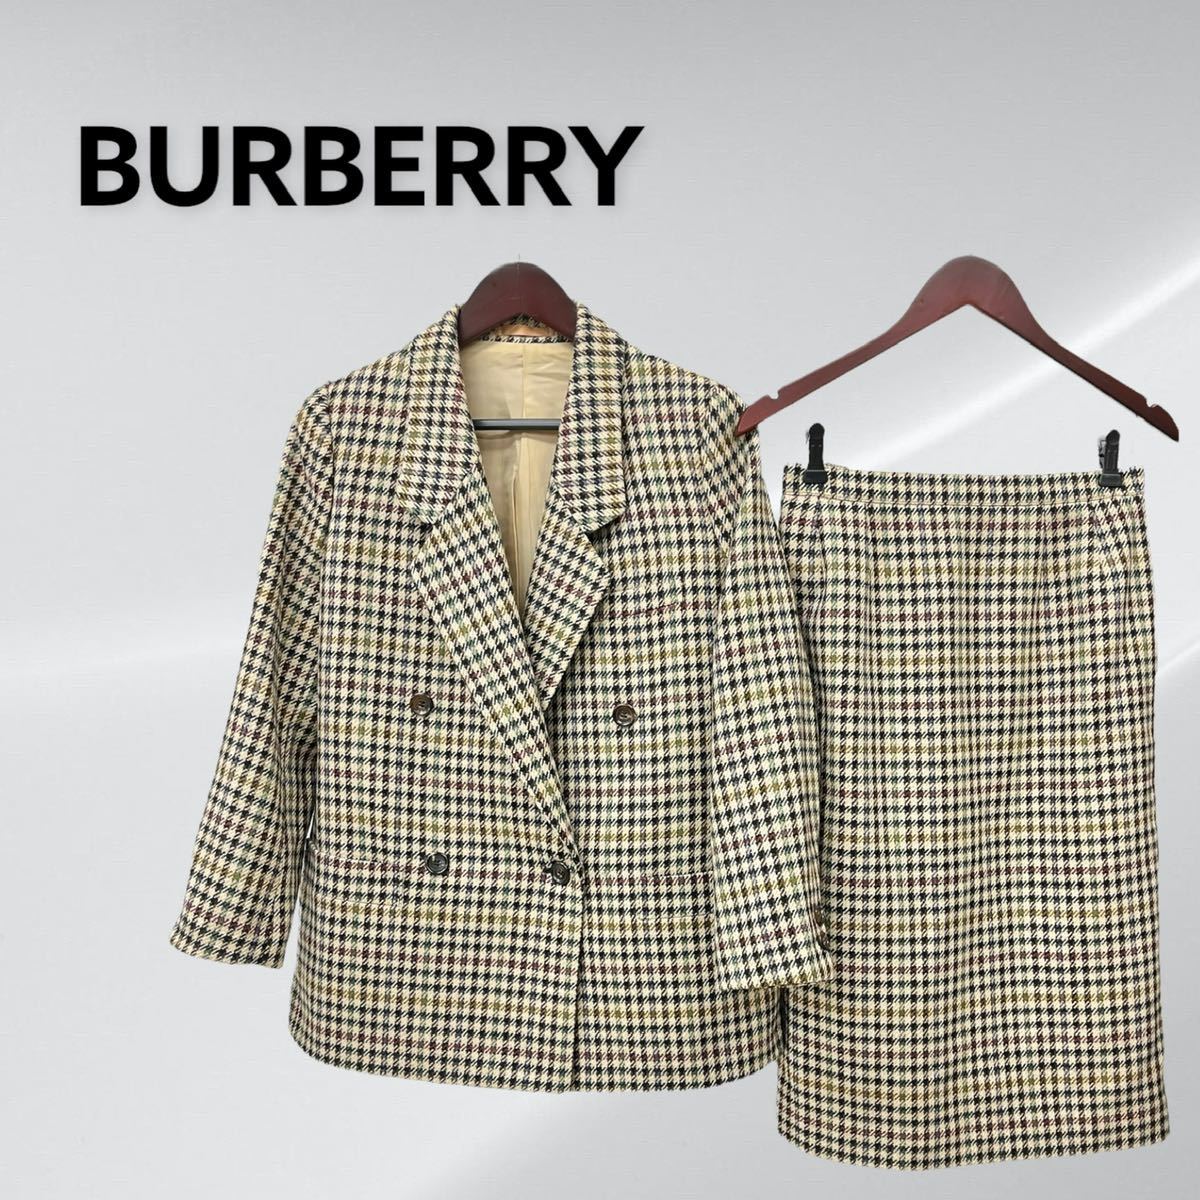 Burberry バーバリー スーツ セットアップ 千鳥格子 千鳥柄 人気 